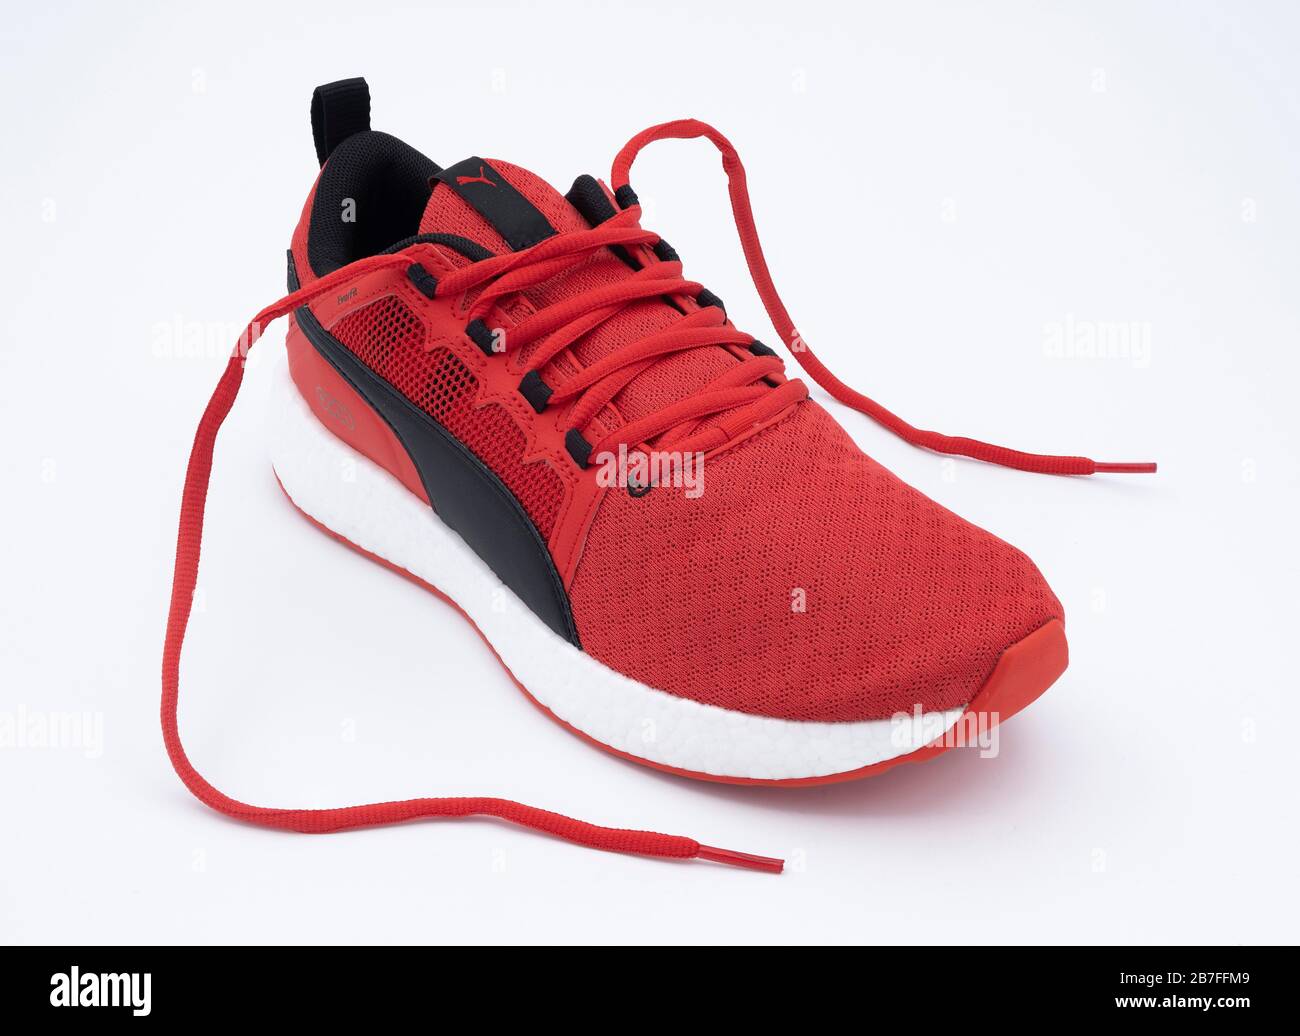 Por qué las suelas color rojo de los zapatos del diseñador